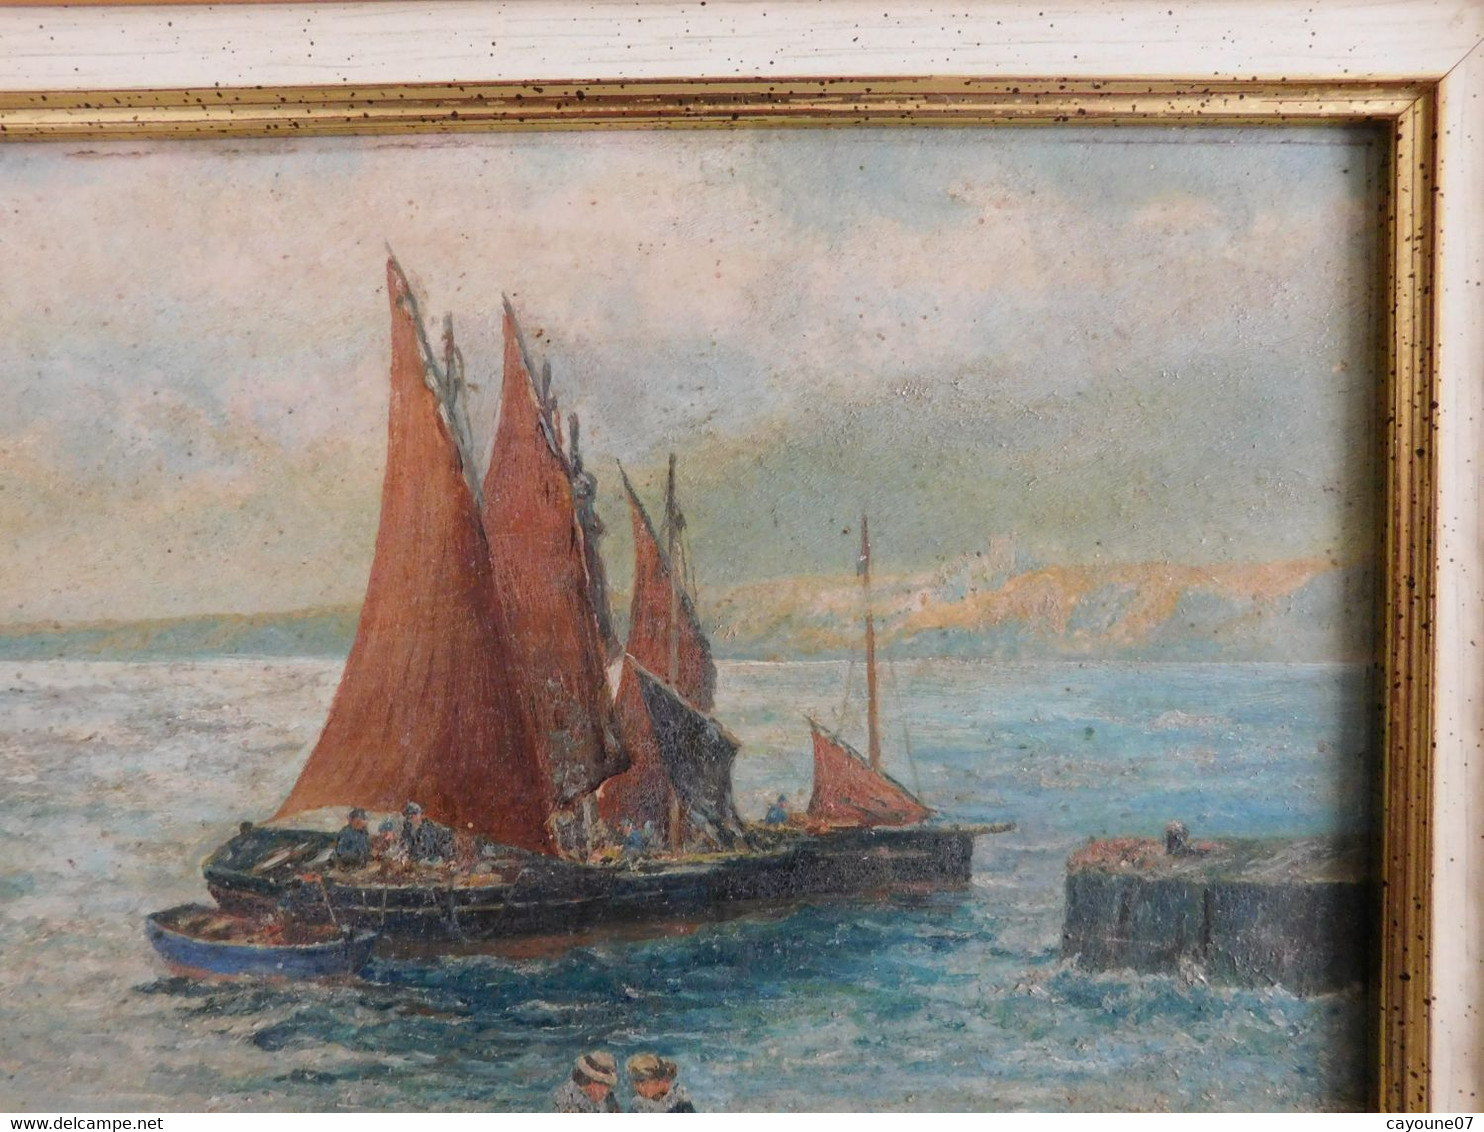 Gfr DOTCHIN (XIX - XXème) Huile sur panneau "Retour de pêche animée Thonniers"  1922